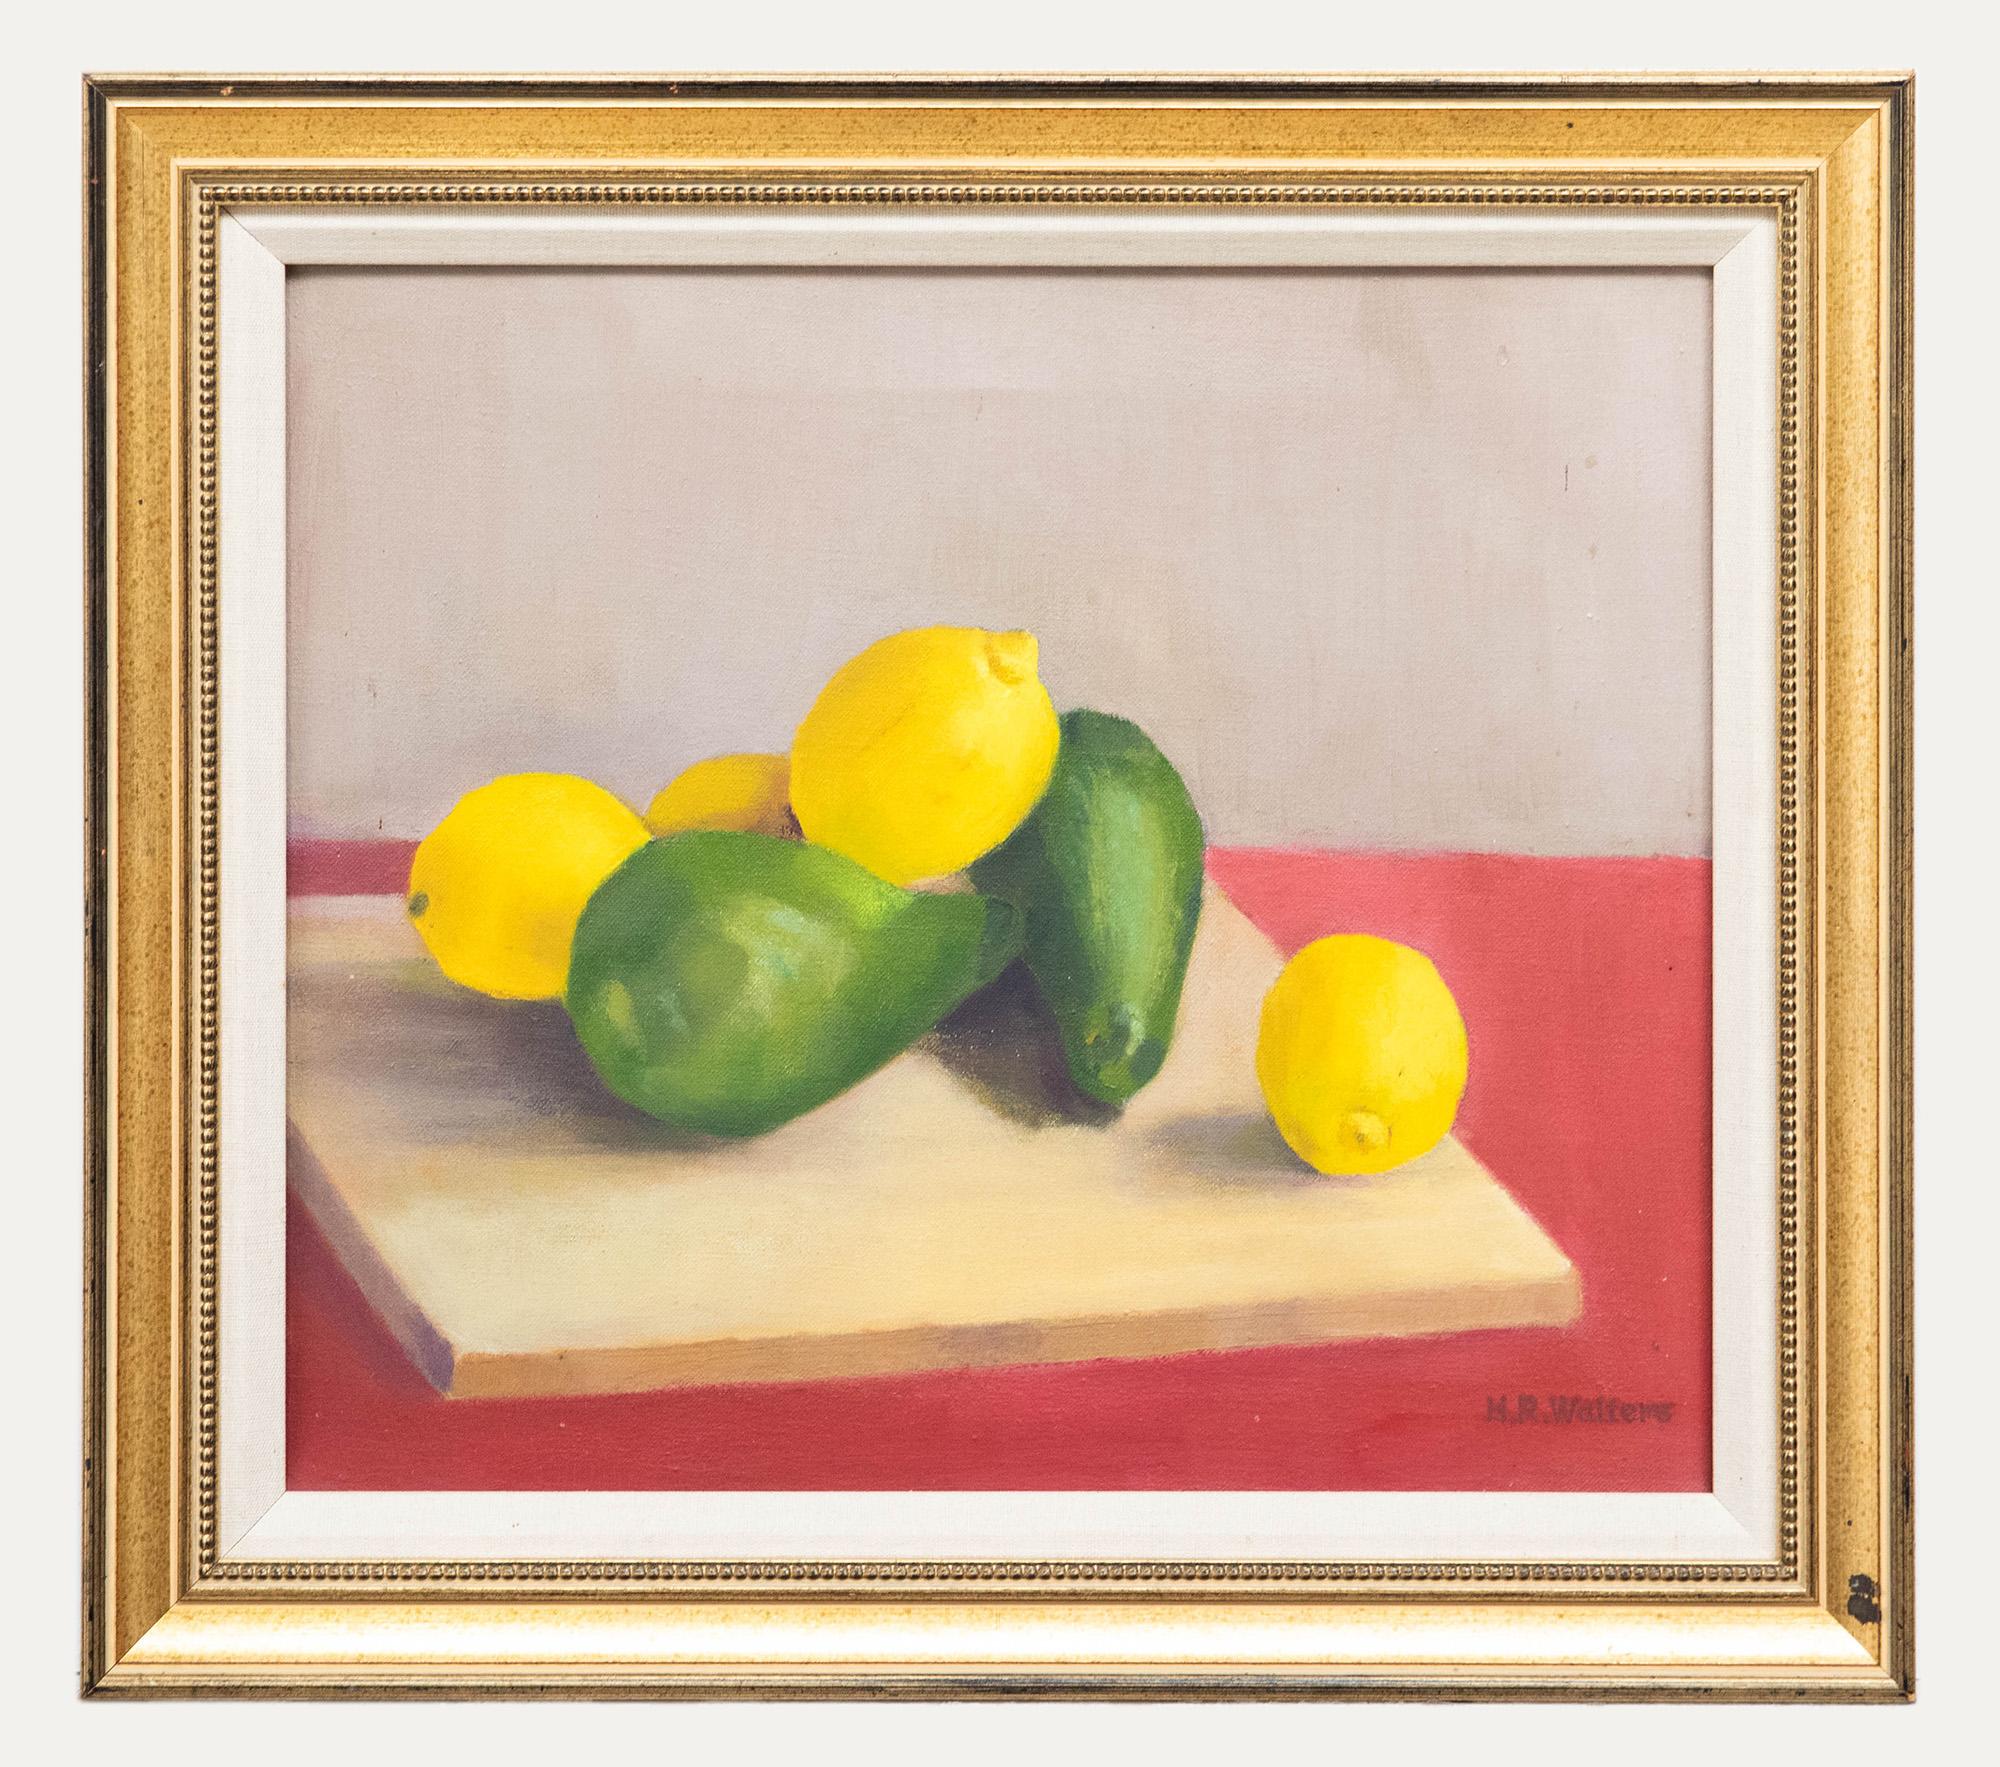 Unknown Still-Life Painting – H. R. Walters - Gerahmtes Ölgemälde, Zitronen und Birnen, Mitte des 20. Jahrhunderts